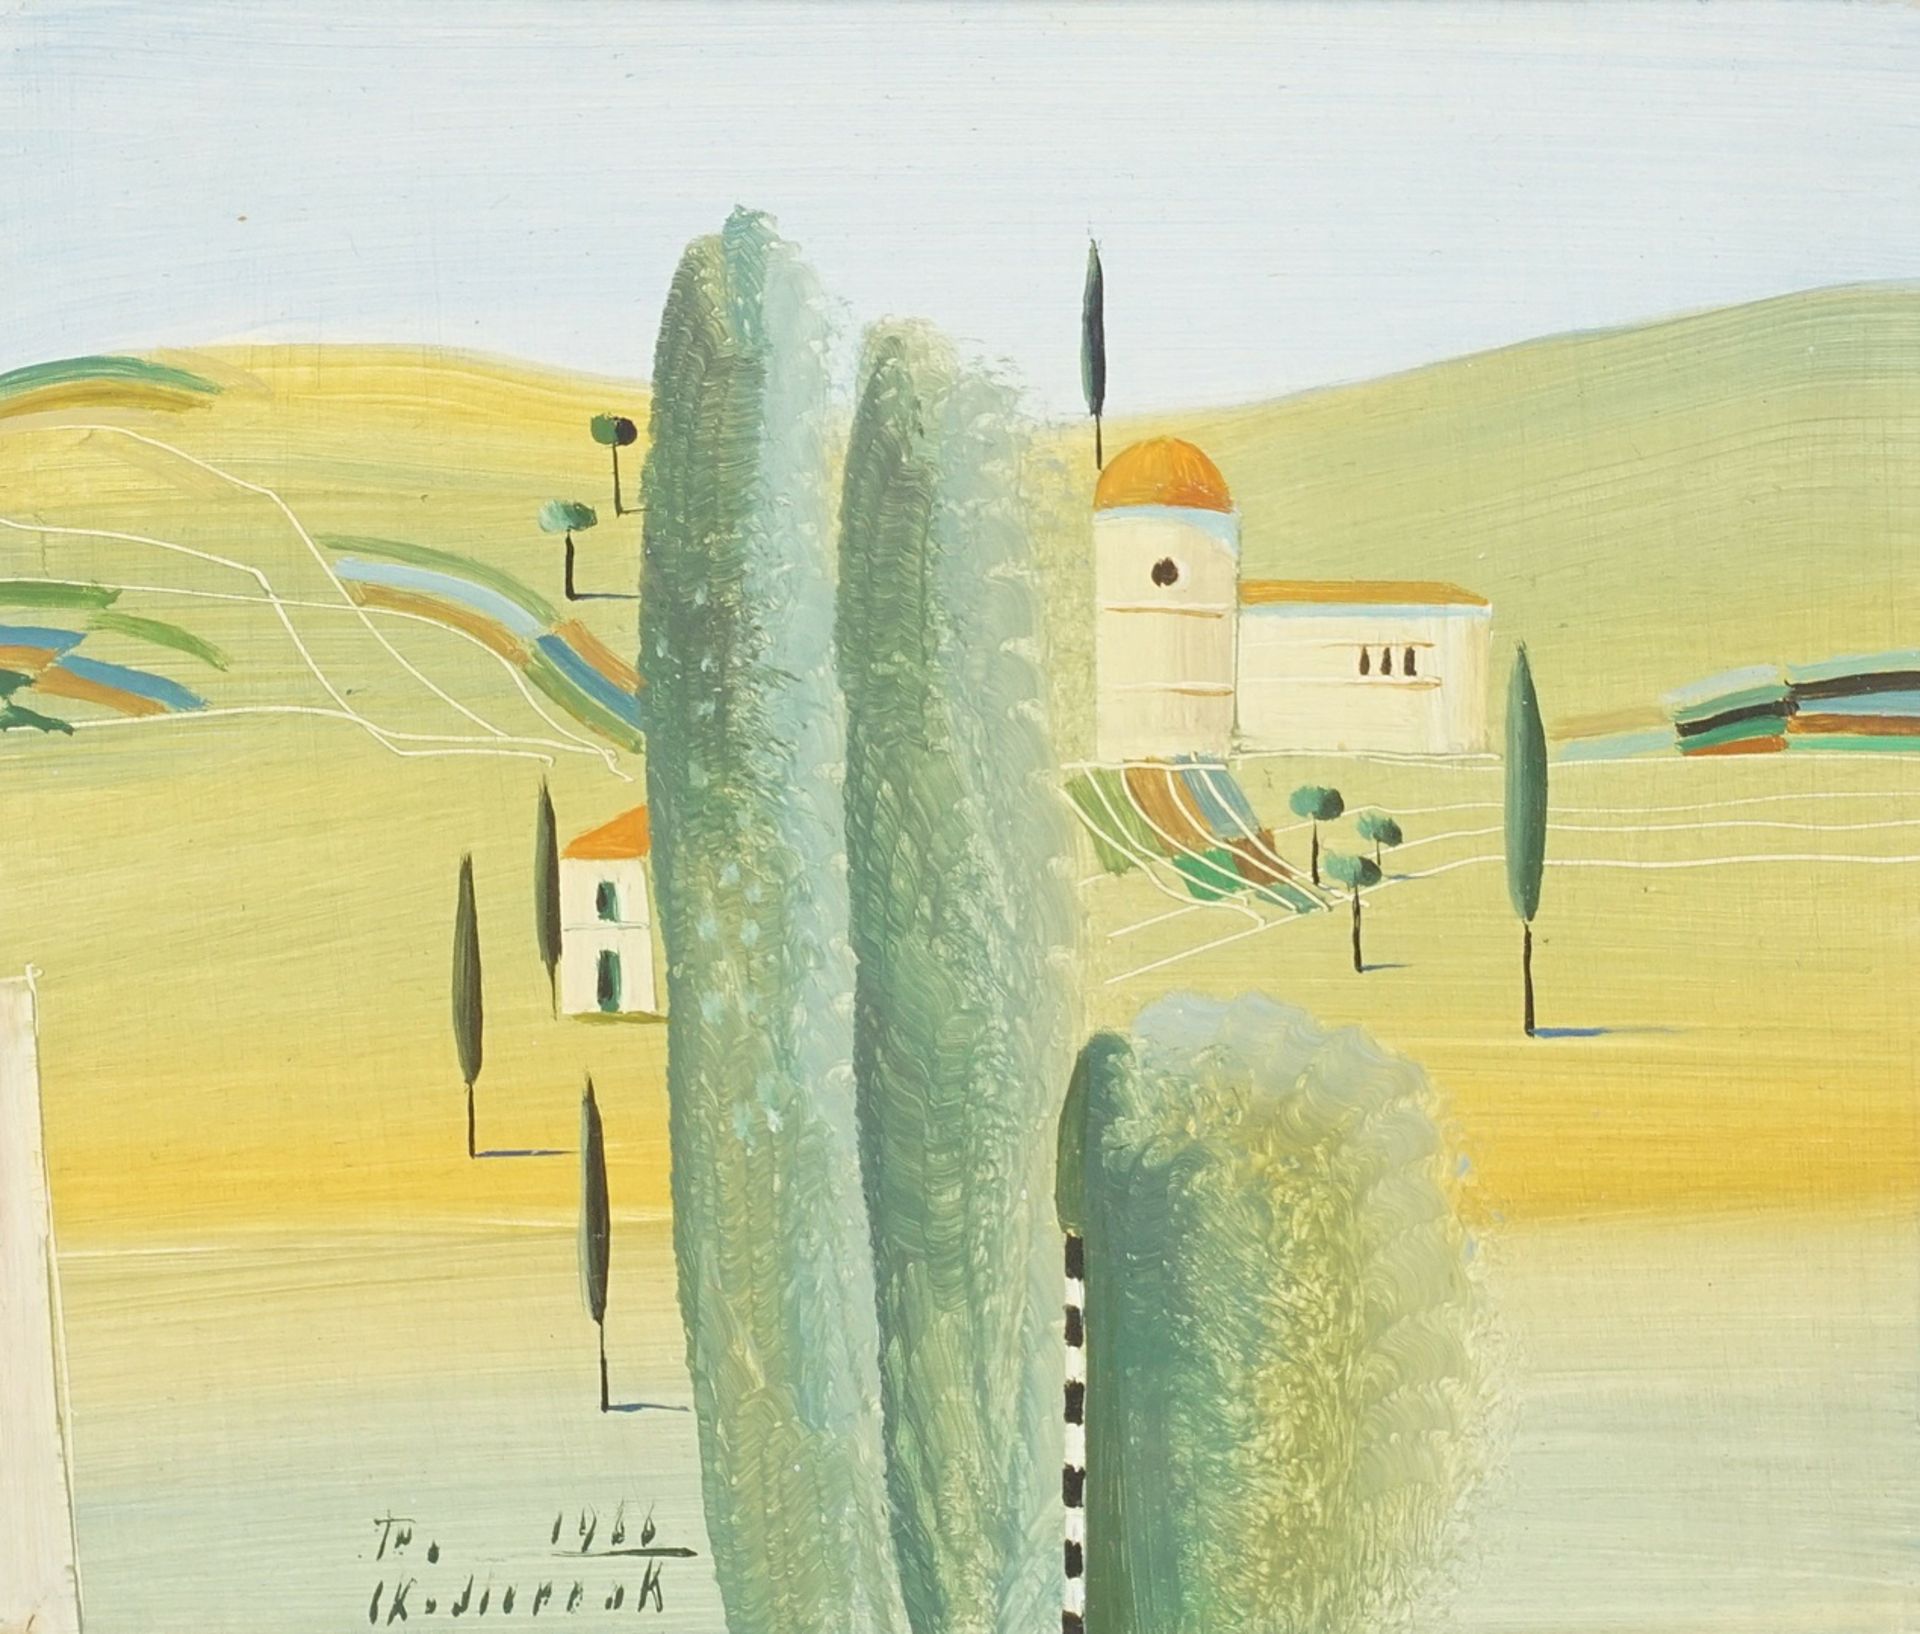 Horst Skodlerrak (1920-2001), Toscana in July